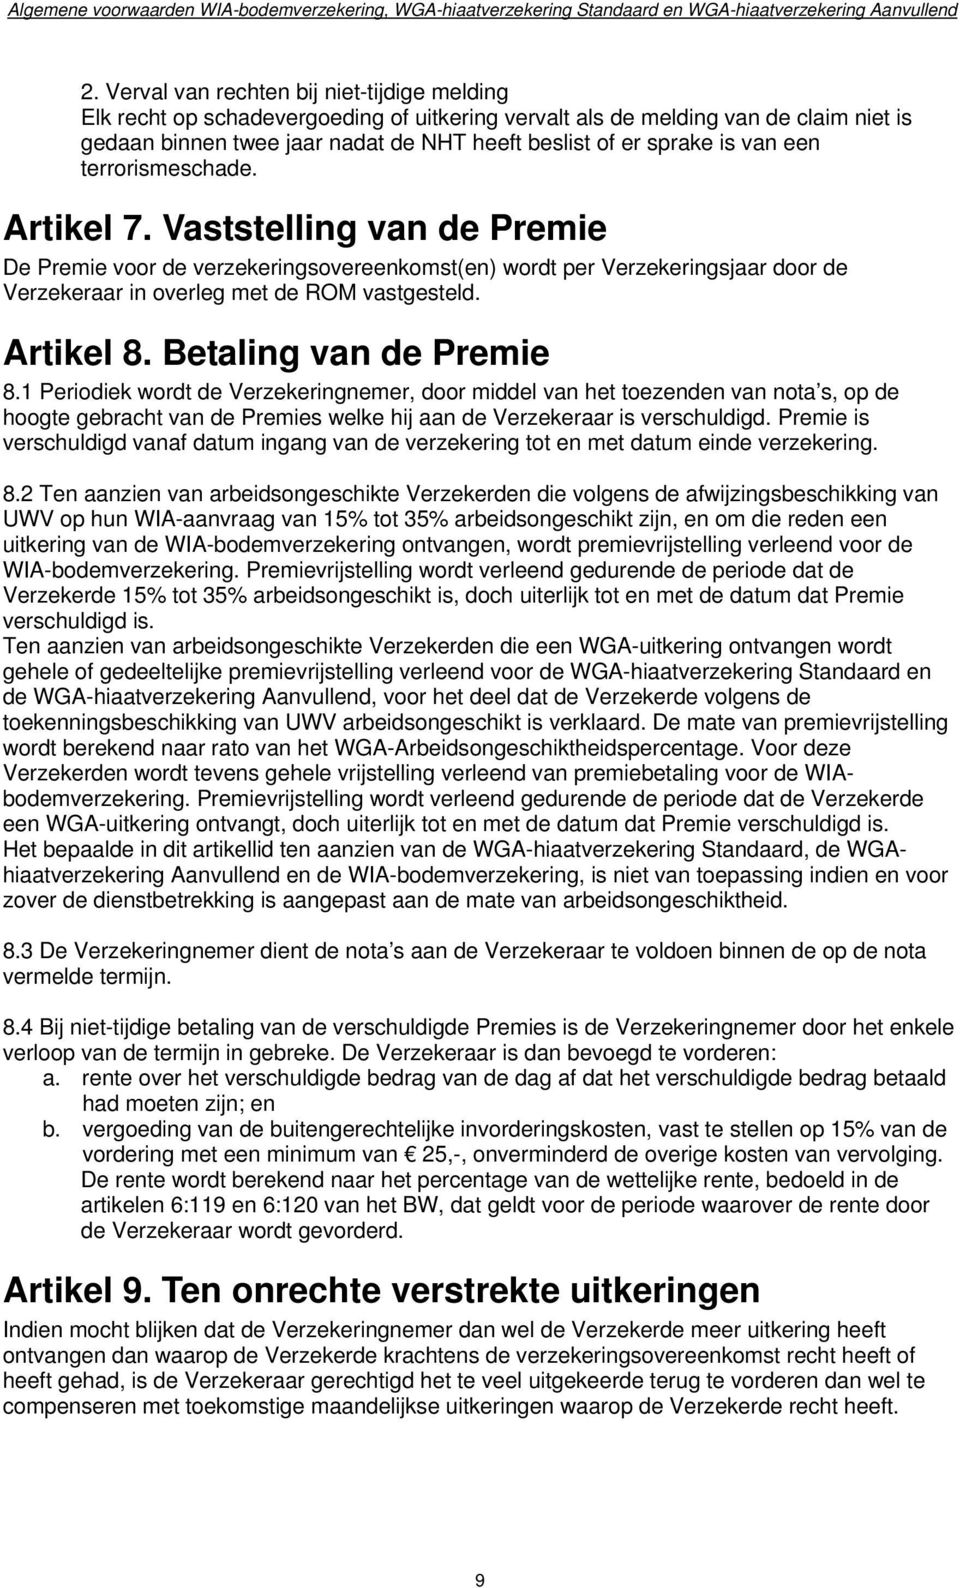 van een terrorismeschade. Artikel 7. Vaststelling van de Premie De Premie voor de verzekeringsovereenkomst(en) wordt per Verzekeringsjaar door de Verzekeraar in overleg met de ROM vastgesteld.